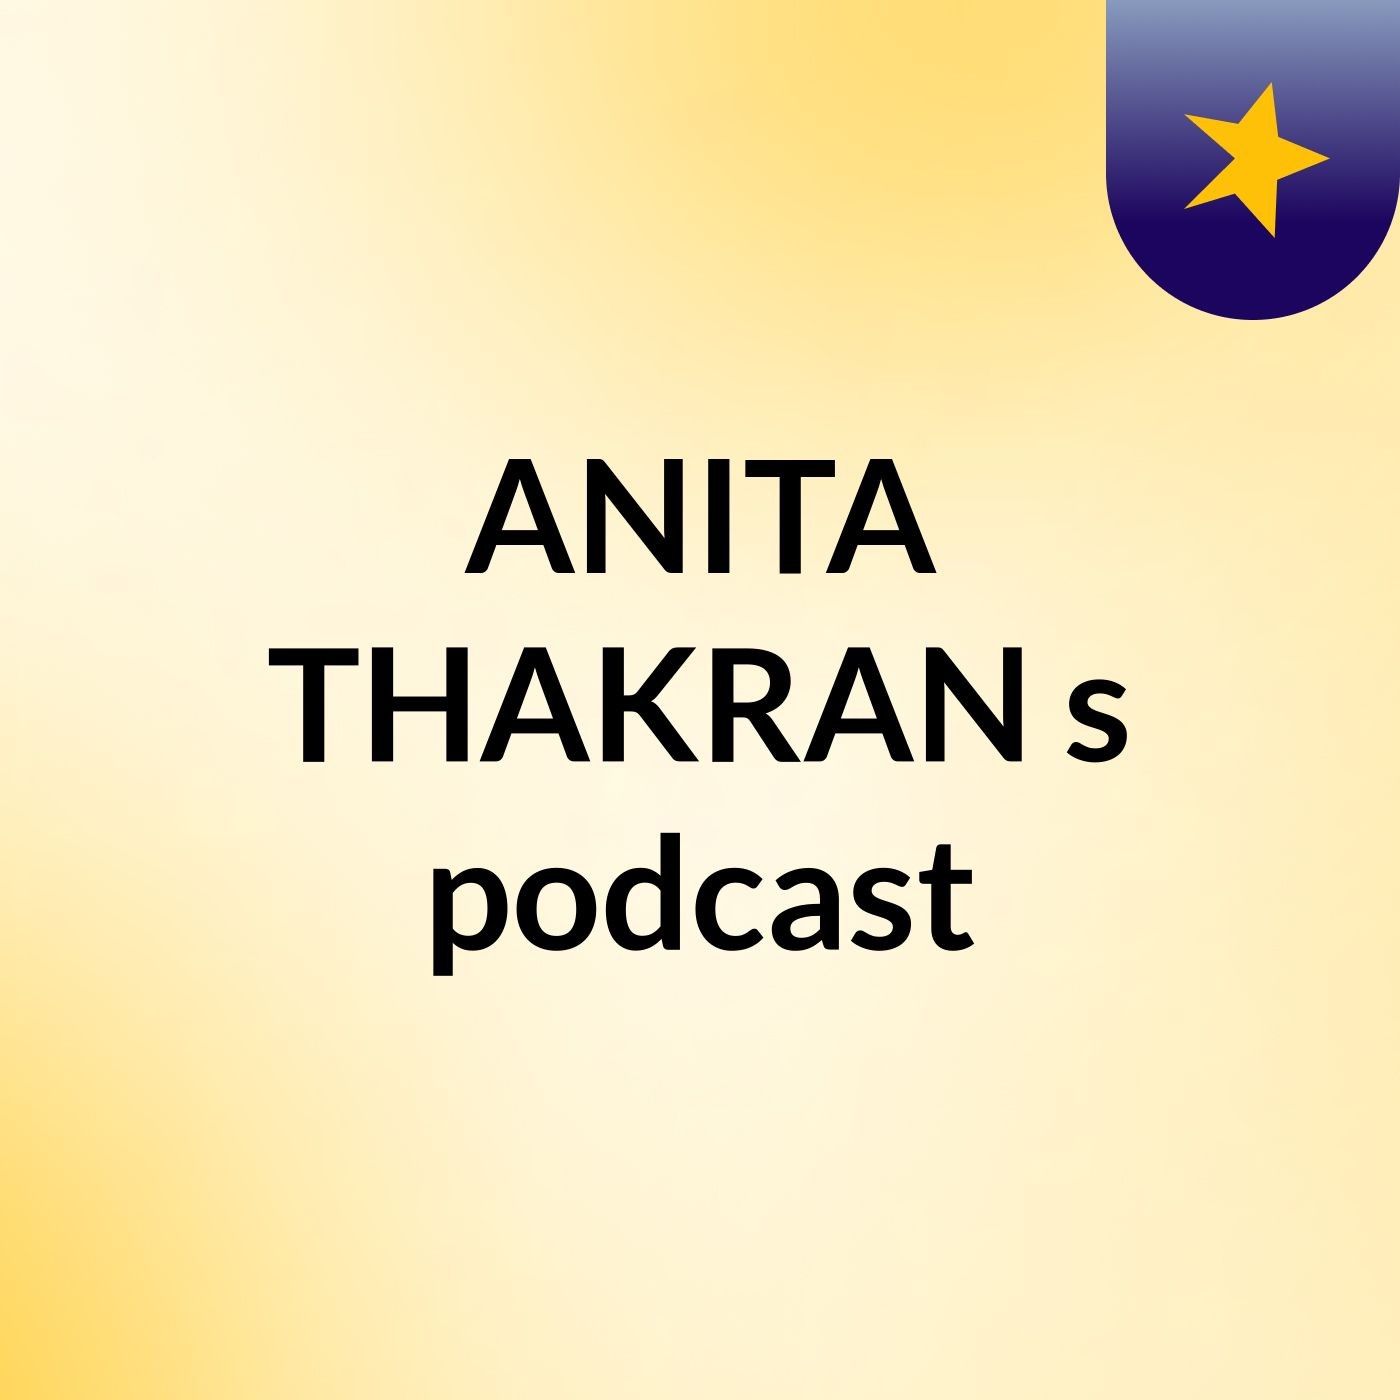 Episode 7 - ANITA THAKRAN's podcast